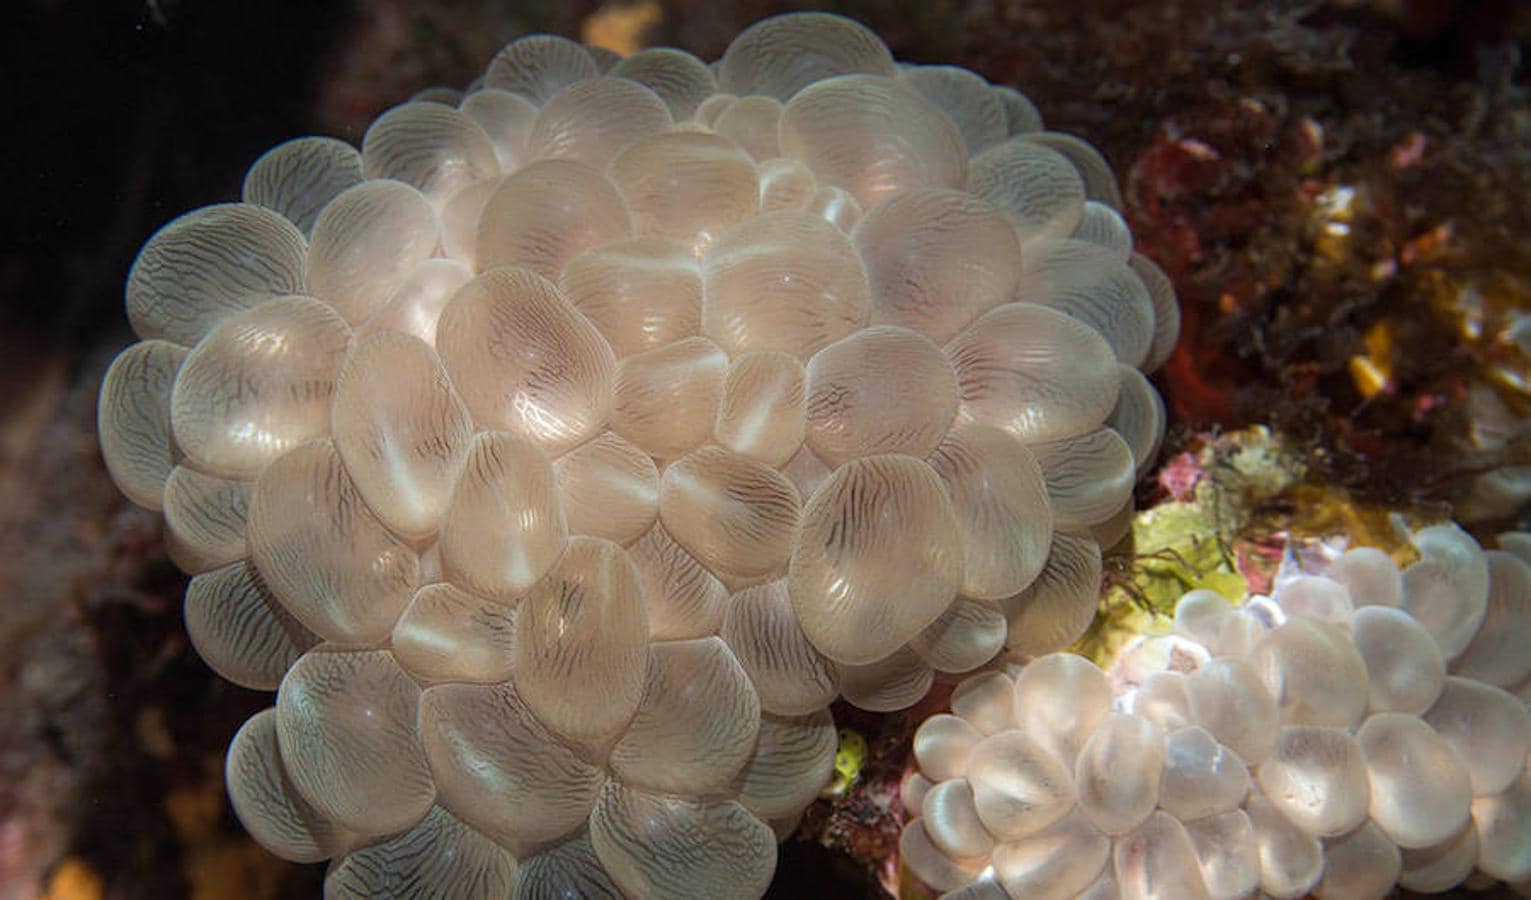 Un viaje por los corales del Pacífico en diez increíbles fotos. Coral burbuja. A pesar de su apariencia, estos corales de la especie Plerogyra, también conocidos como corales de burbujas, son en realidad un tipo de corales duros. El tejido es suave y parecido a una burbuja, y oculta el esqueleto duro por debajo.